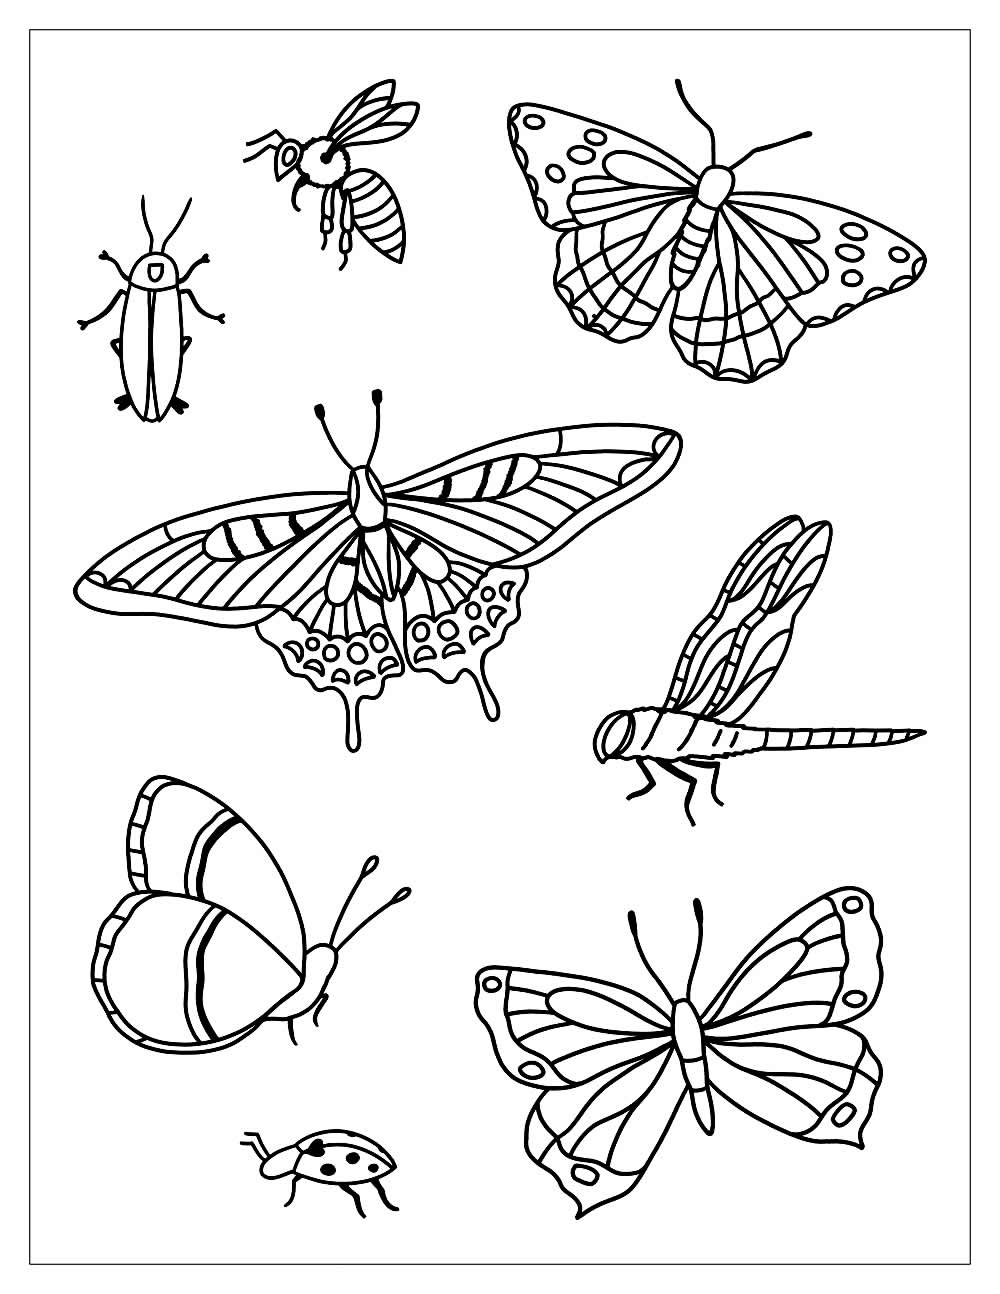 Desenho de borboletas para colorir